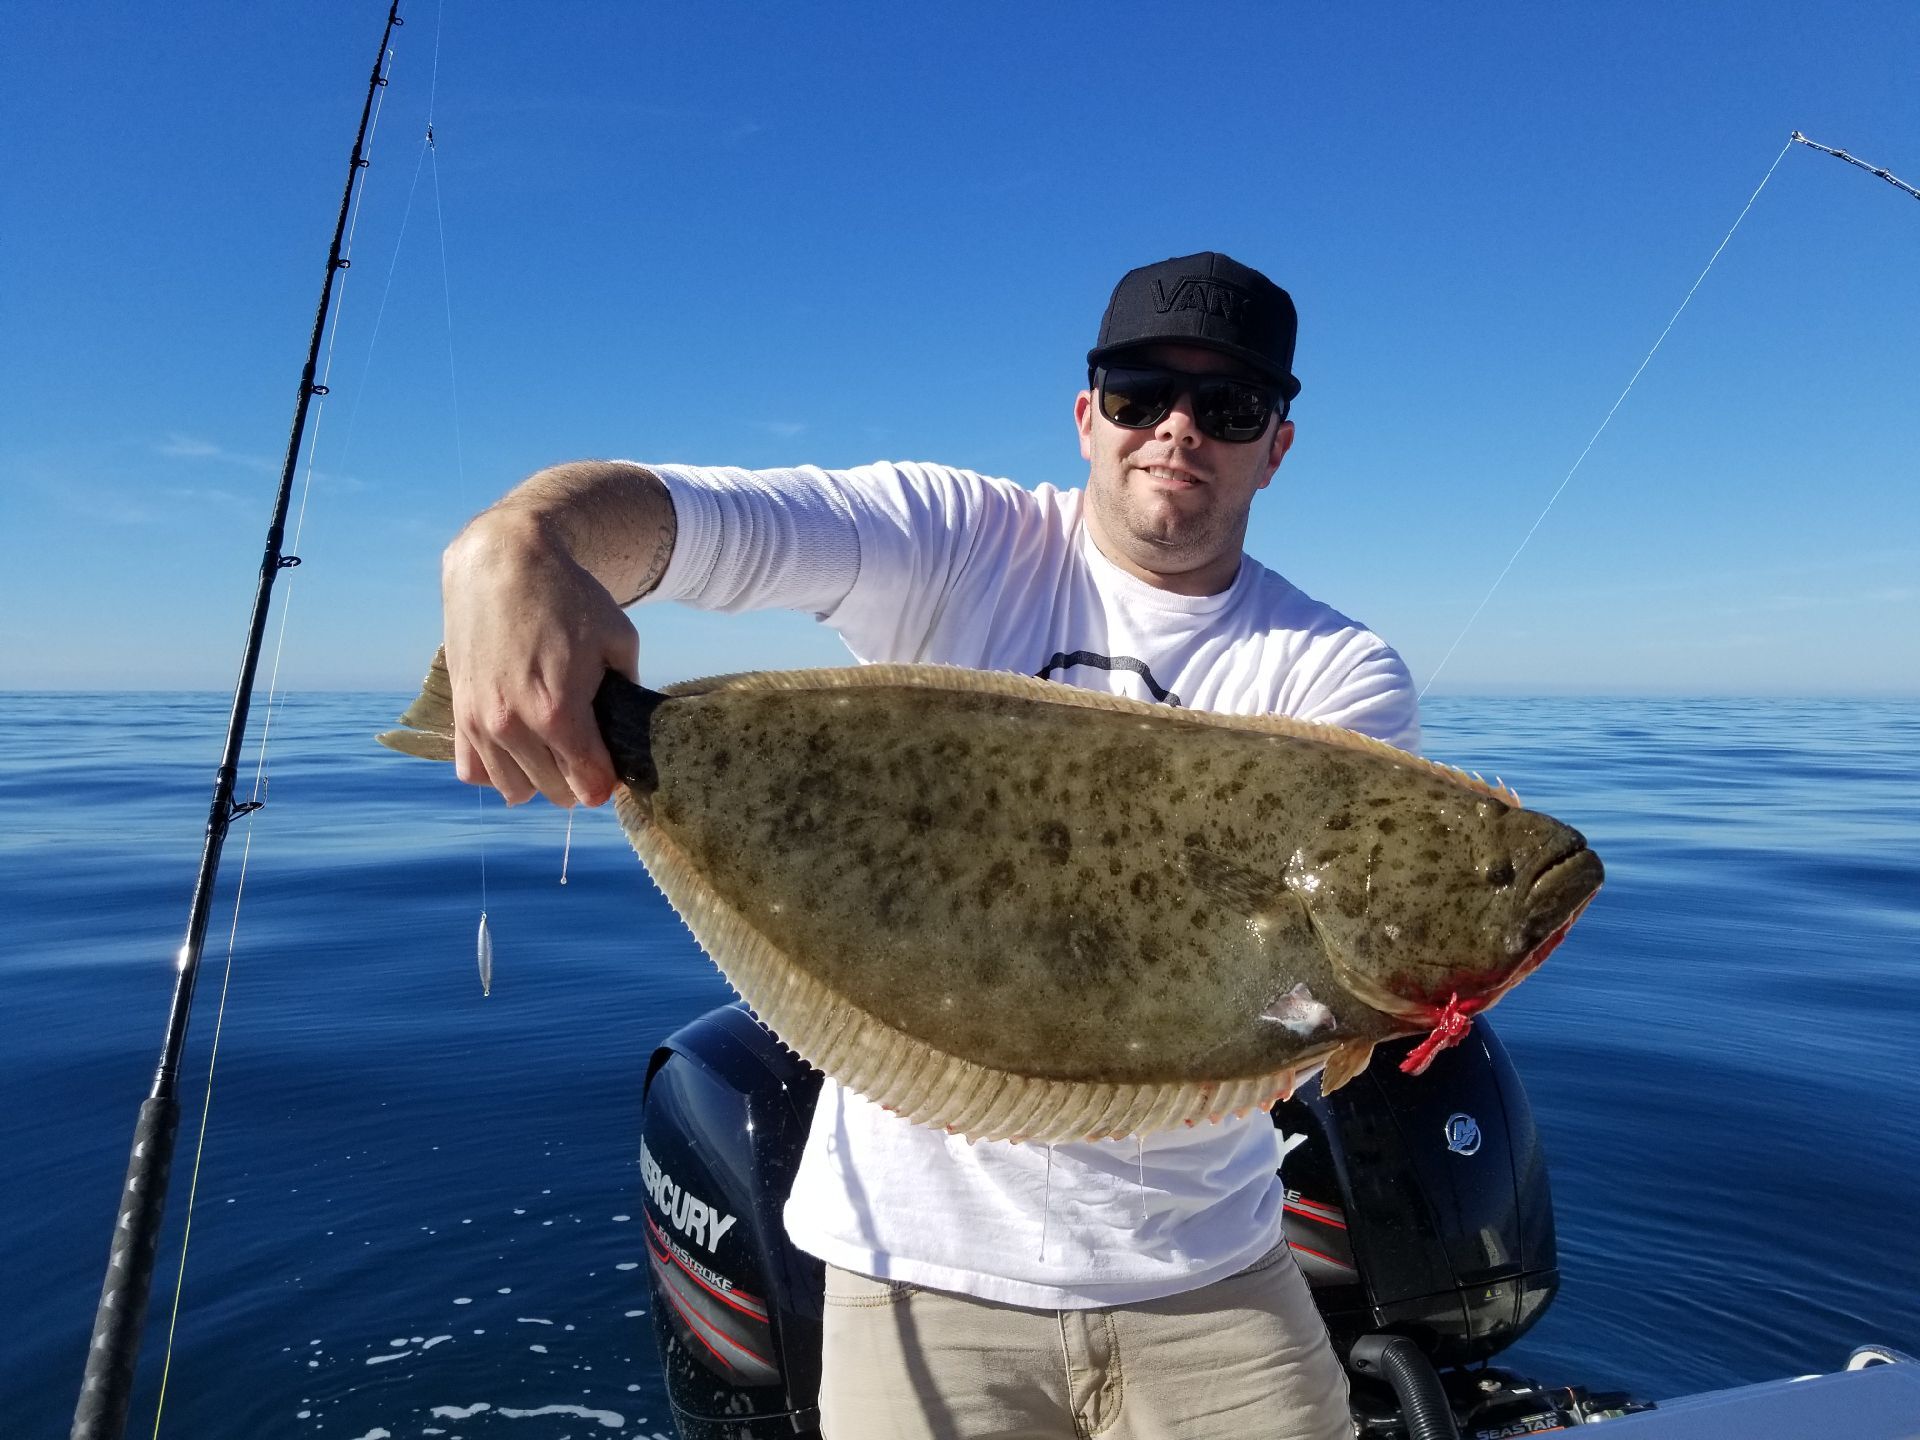 Half-Day Fishing Trip - Starting at $55 - Cali Rick